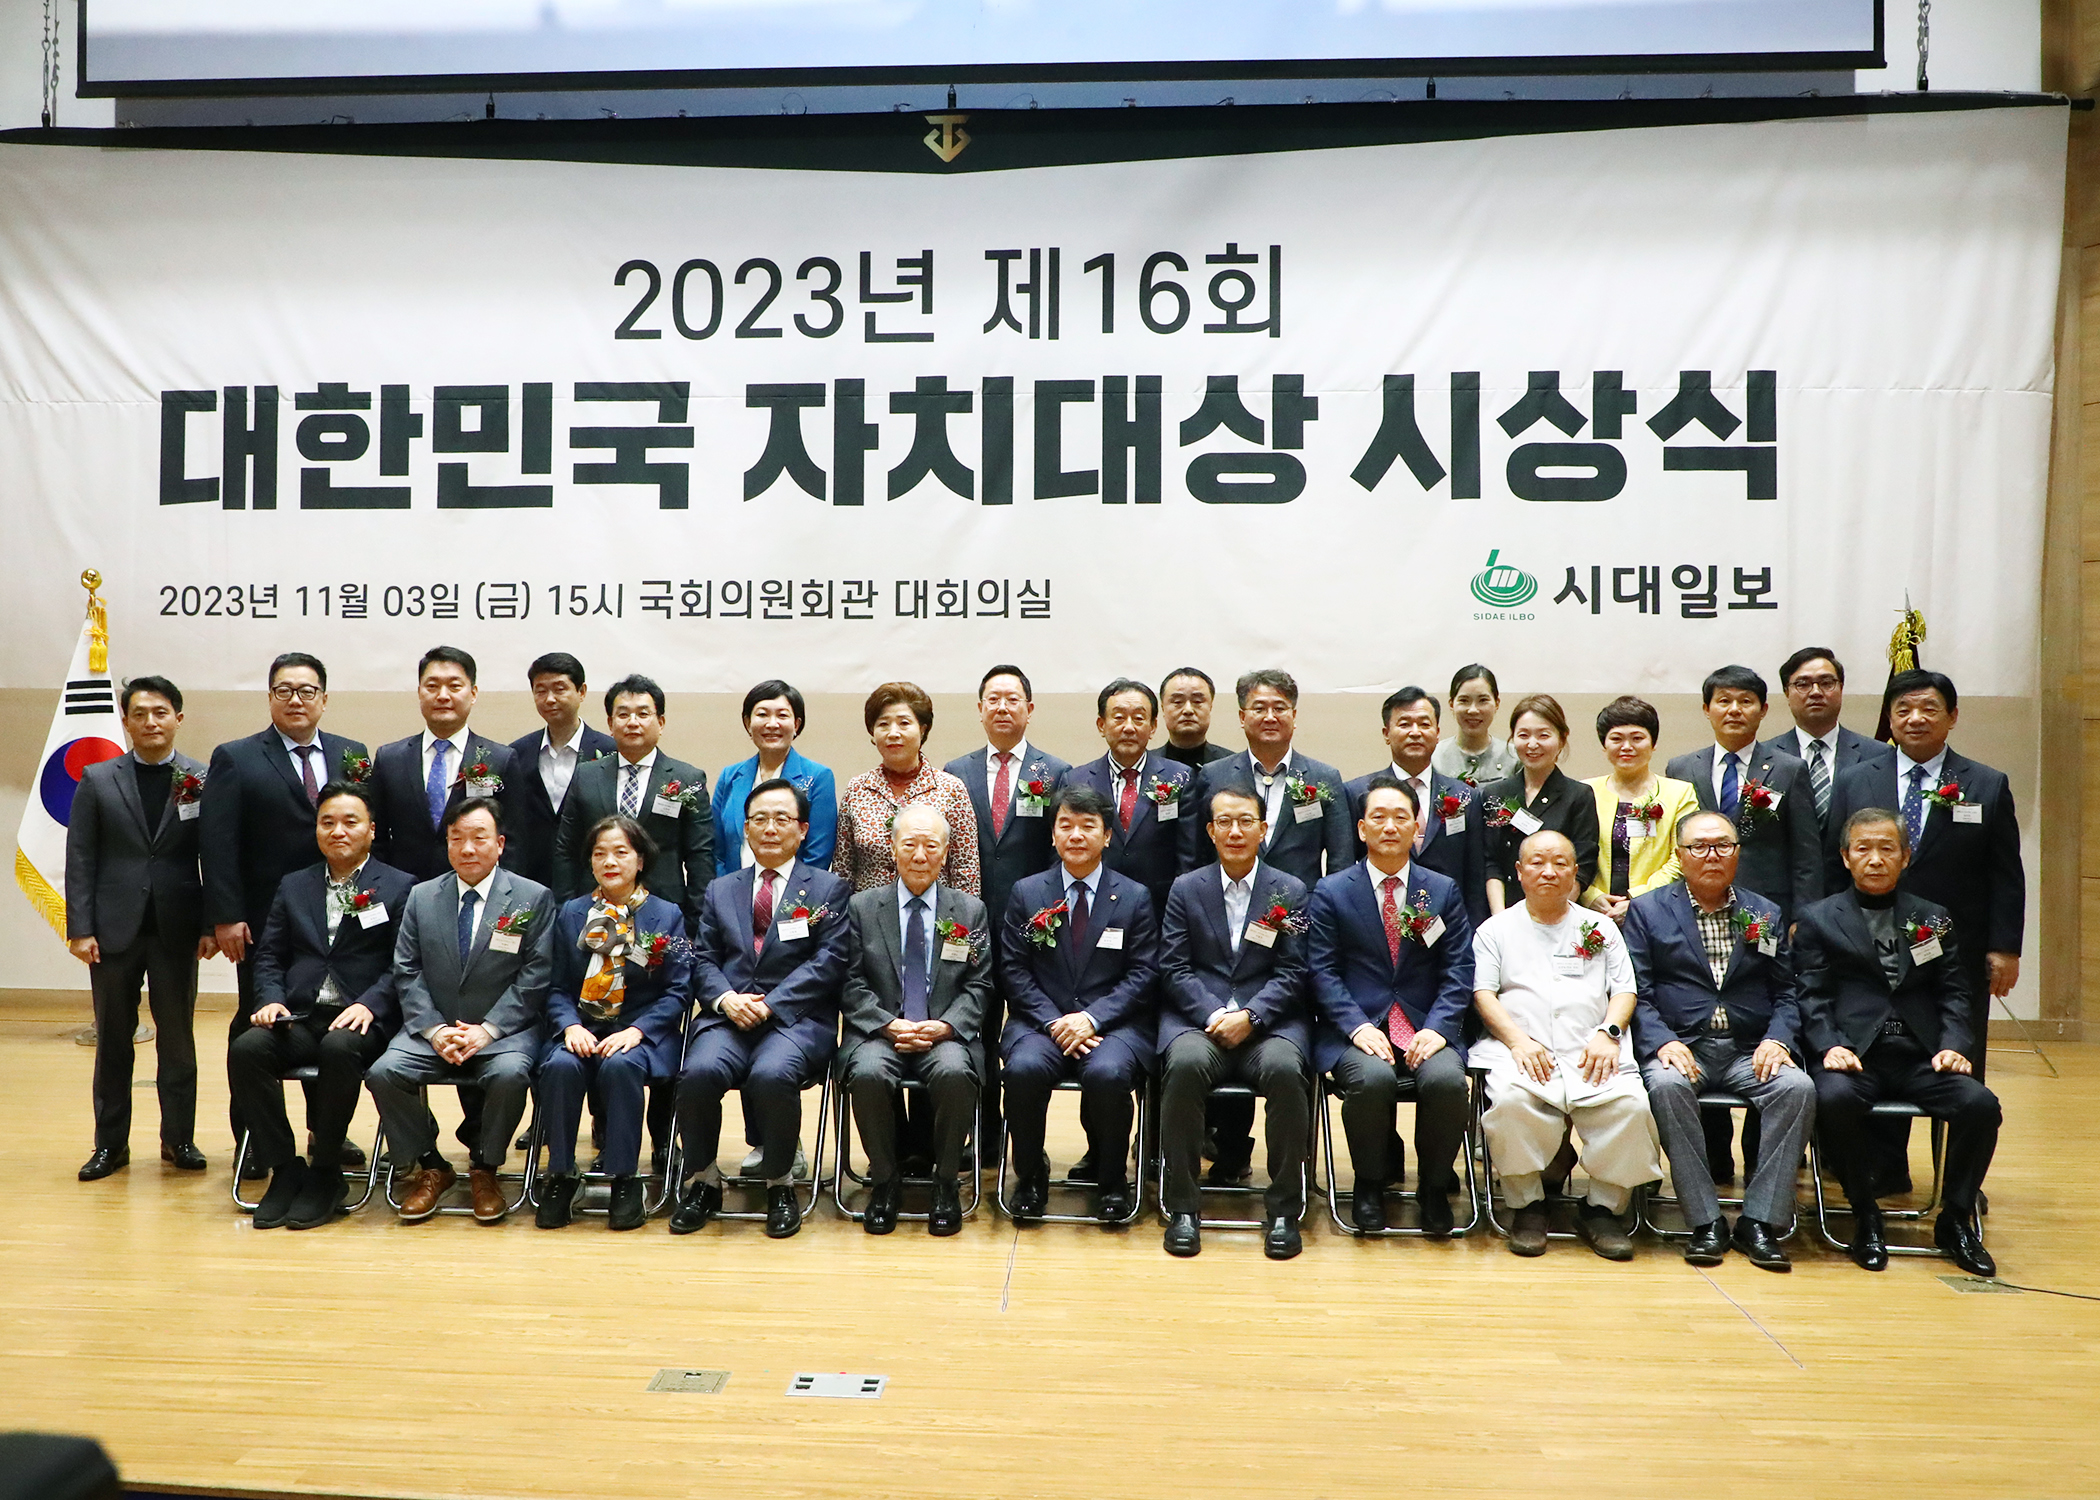 2023년 제16회 대한민국 자치대상 경영대상 수상 - 12